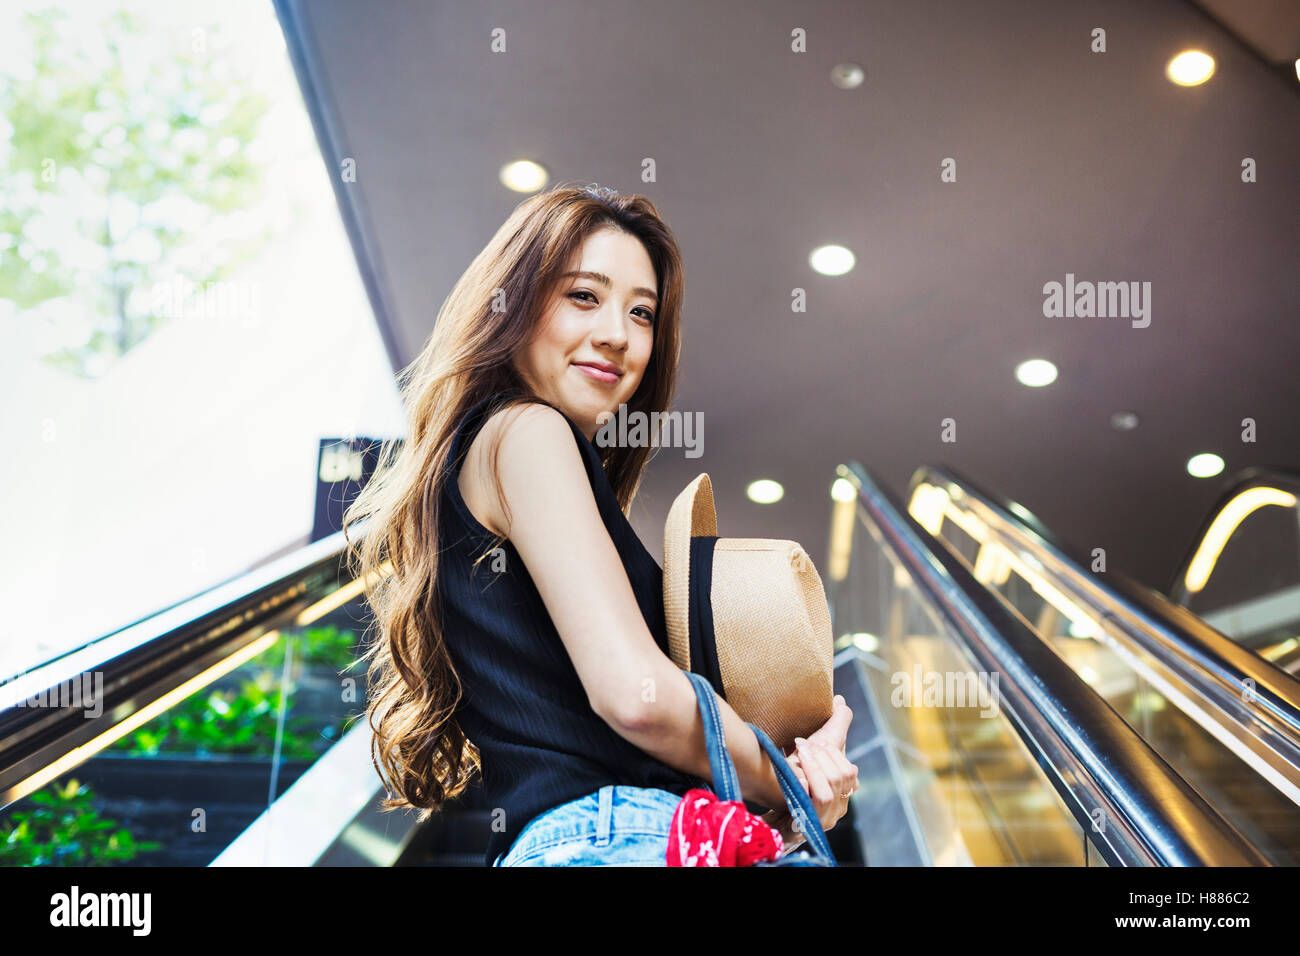 Lächelnde junge Frau mit langen braunen Haaren auf einer Rolltreppe. Stockfoto